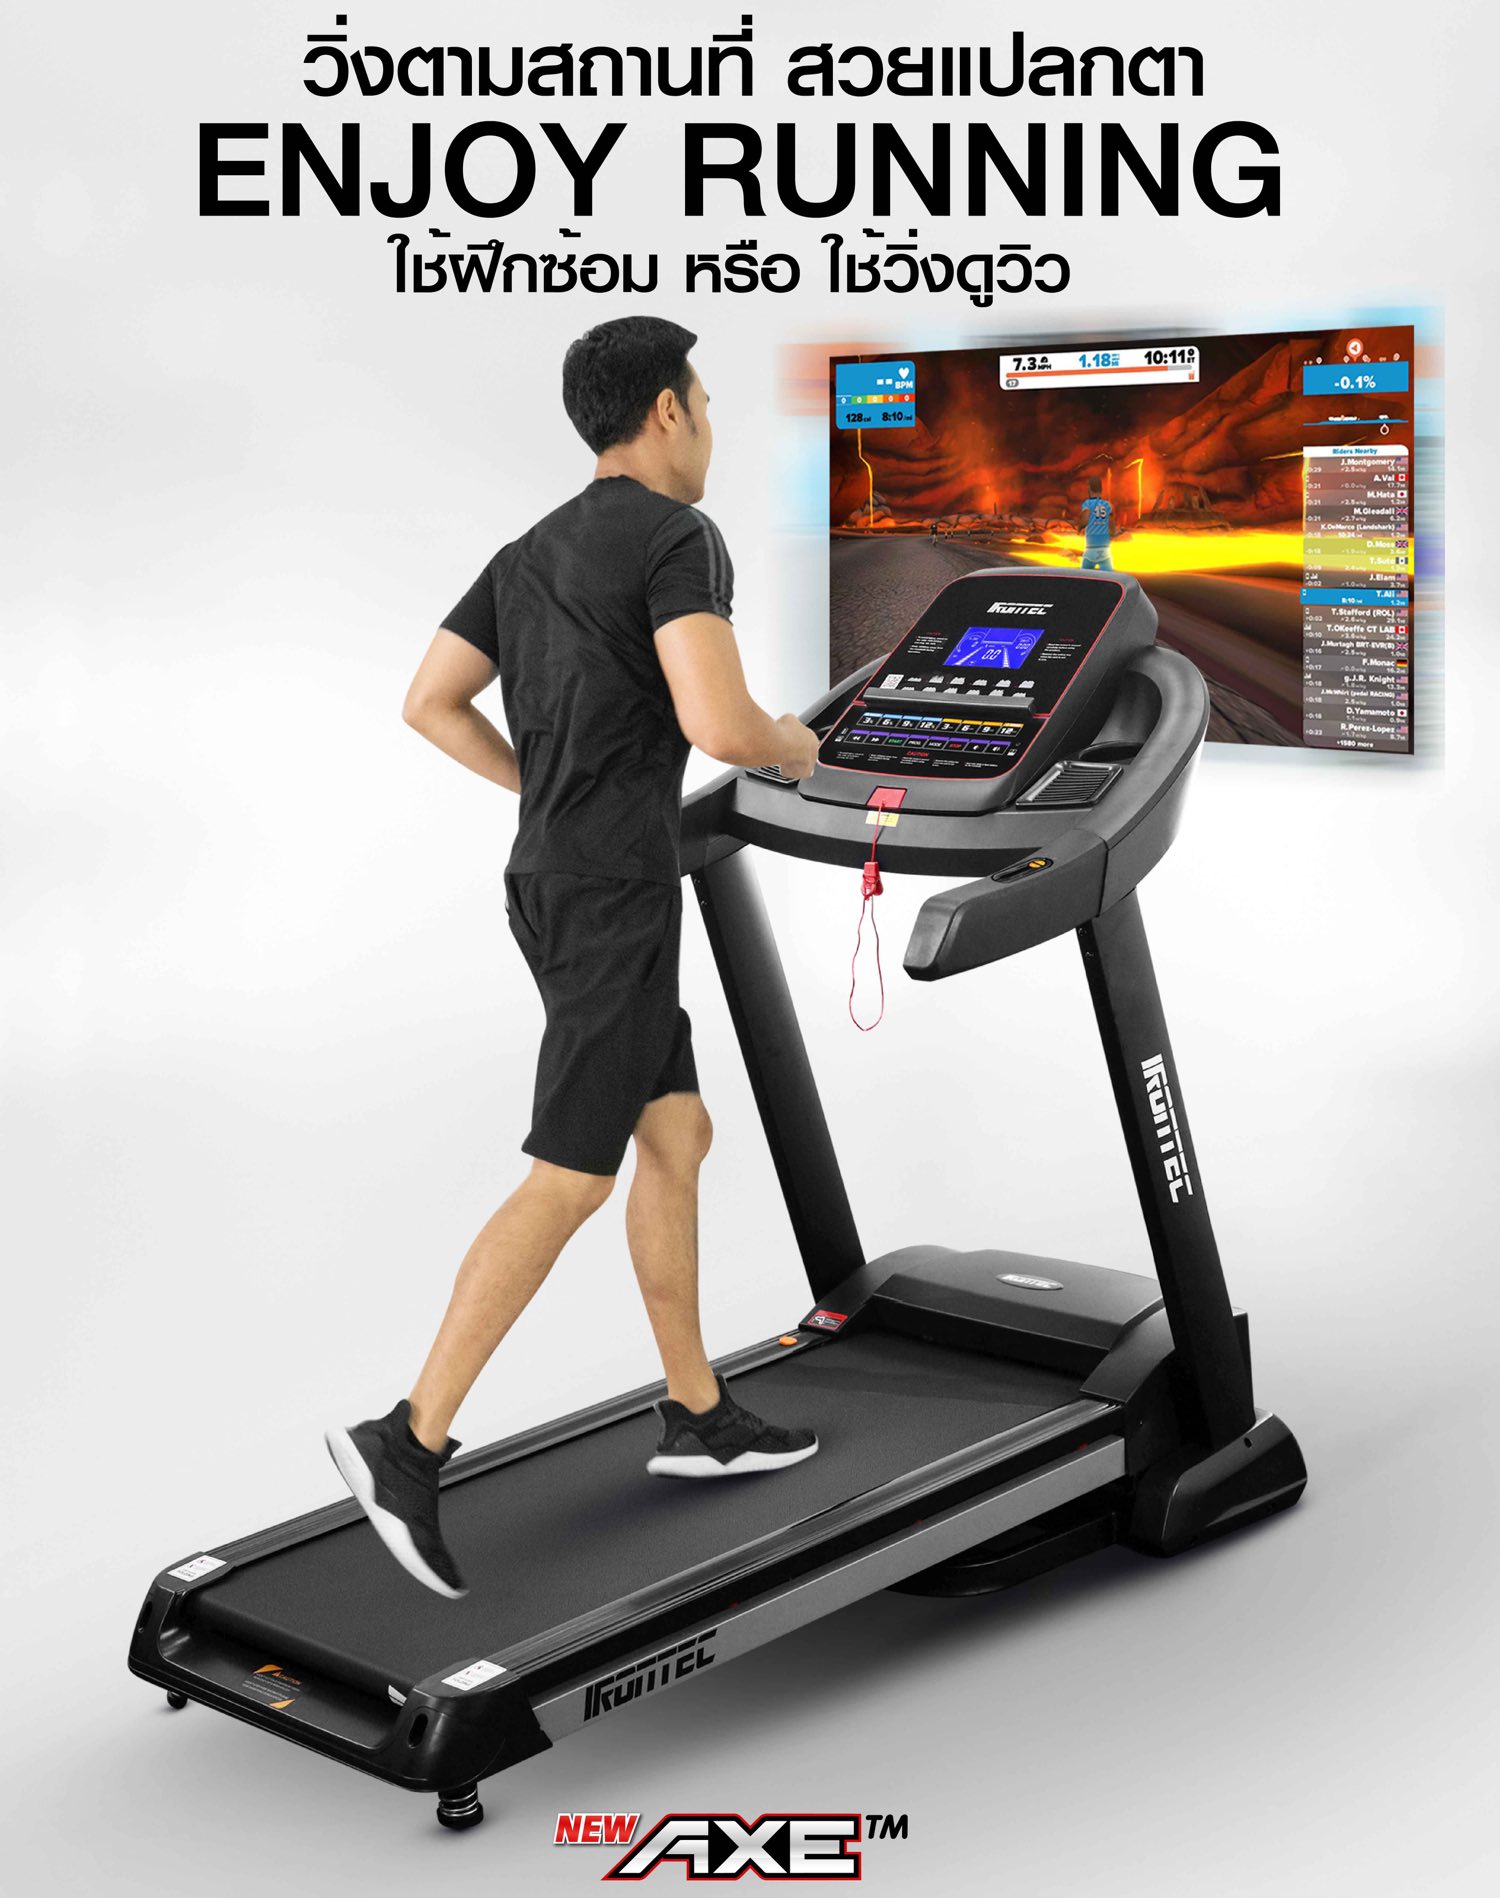 treadmill-axe-zwift-16